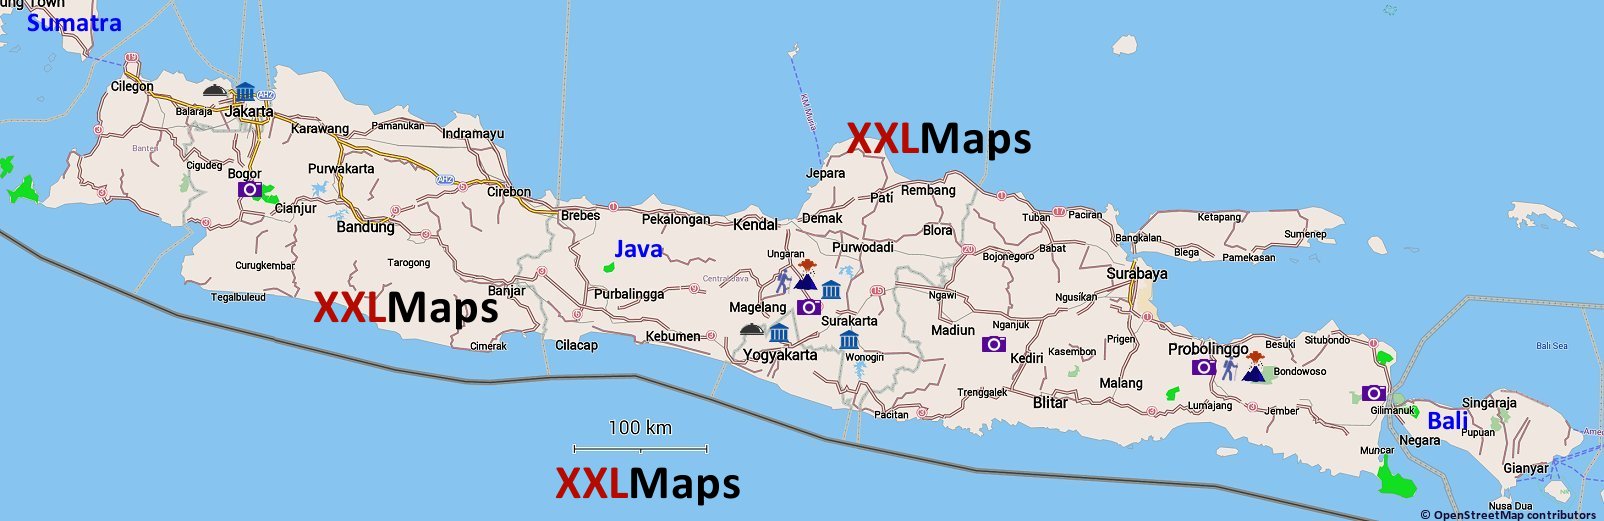 Mapa físico de Java (Indonesia)